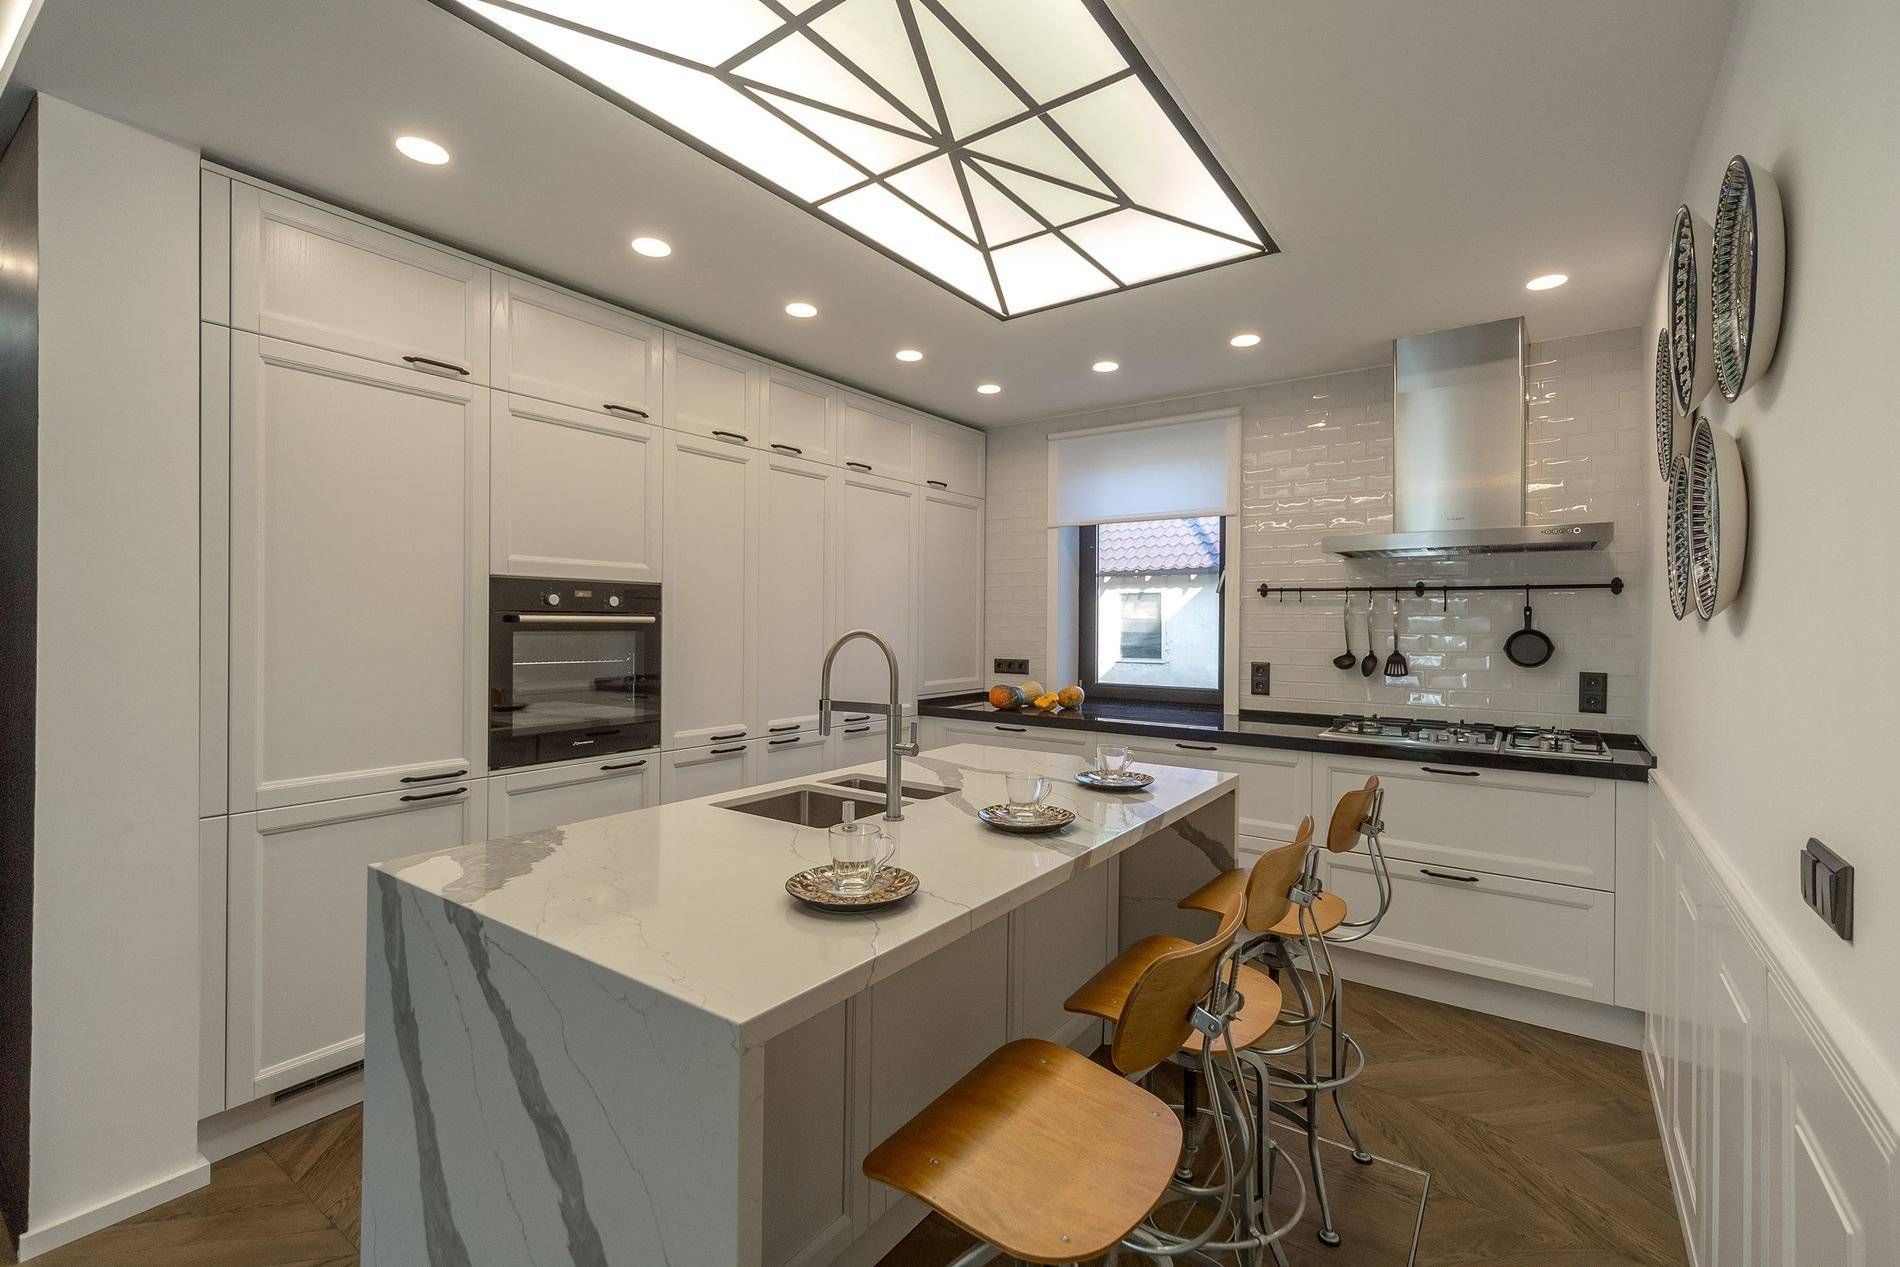 Как организовать освещение на кухне с натяжным потолком?